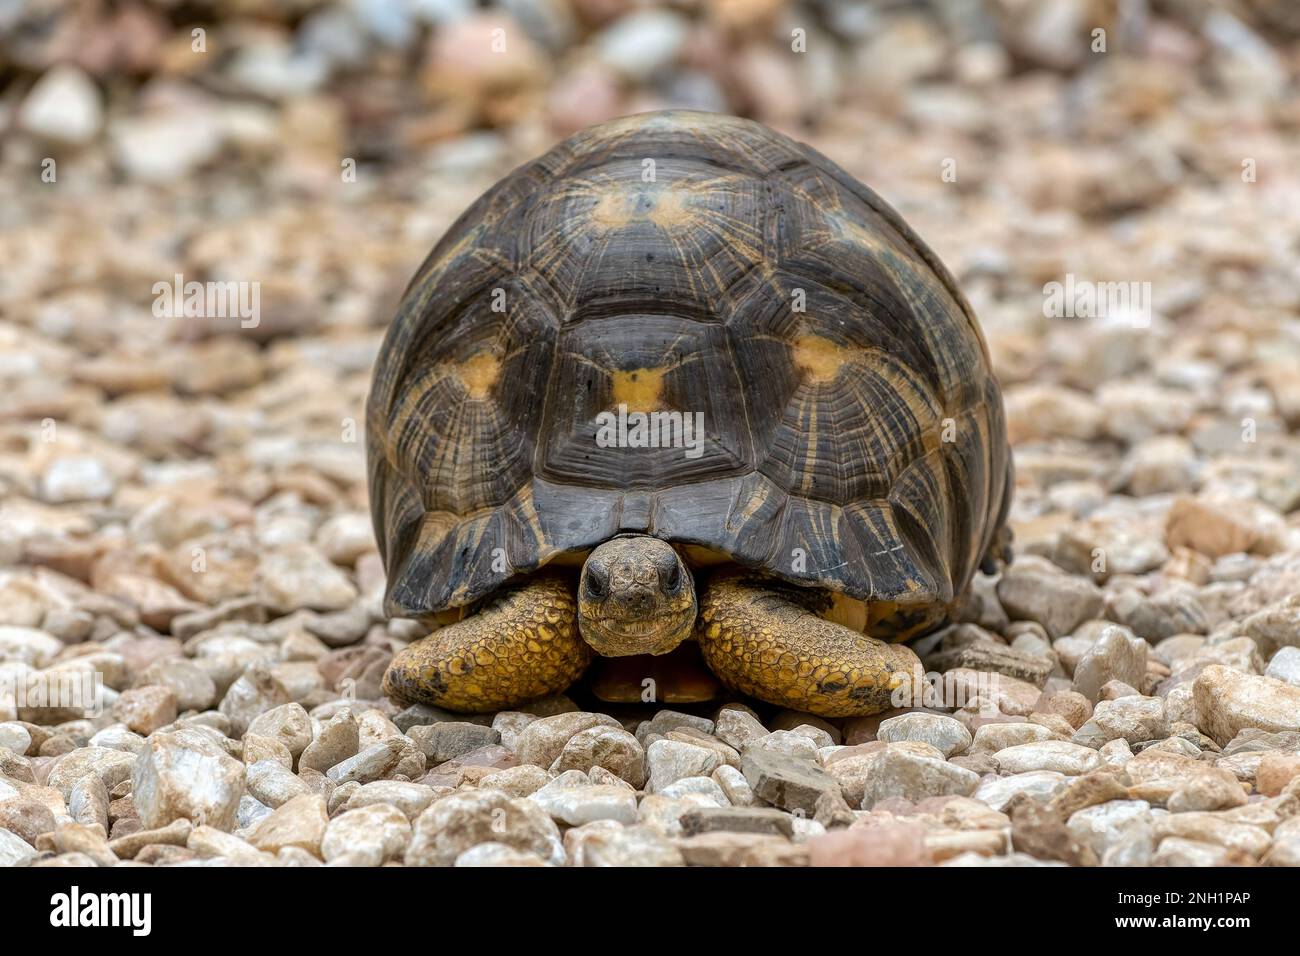 Tortue rayonnée (Astrochelys radiata), espèce de tortue endémique en danger critique d'extinction de la famille des Testudinidae. Antsirabe, Madagascar faune animaa Banque D'Images